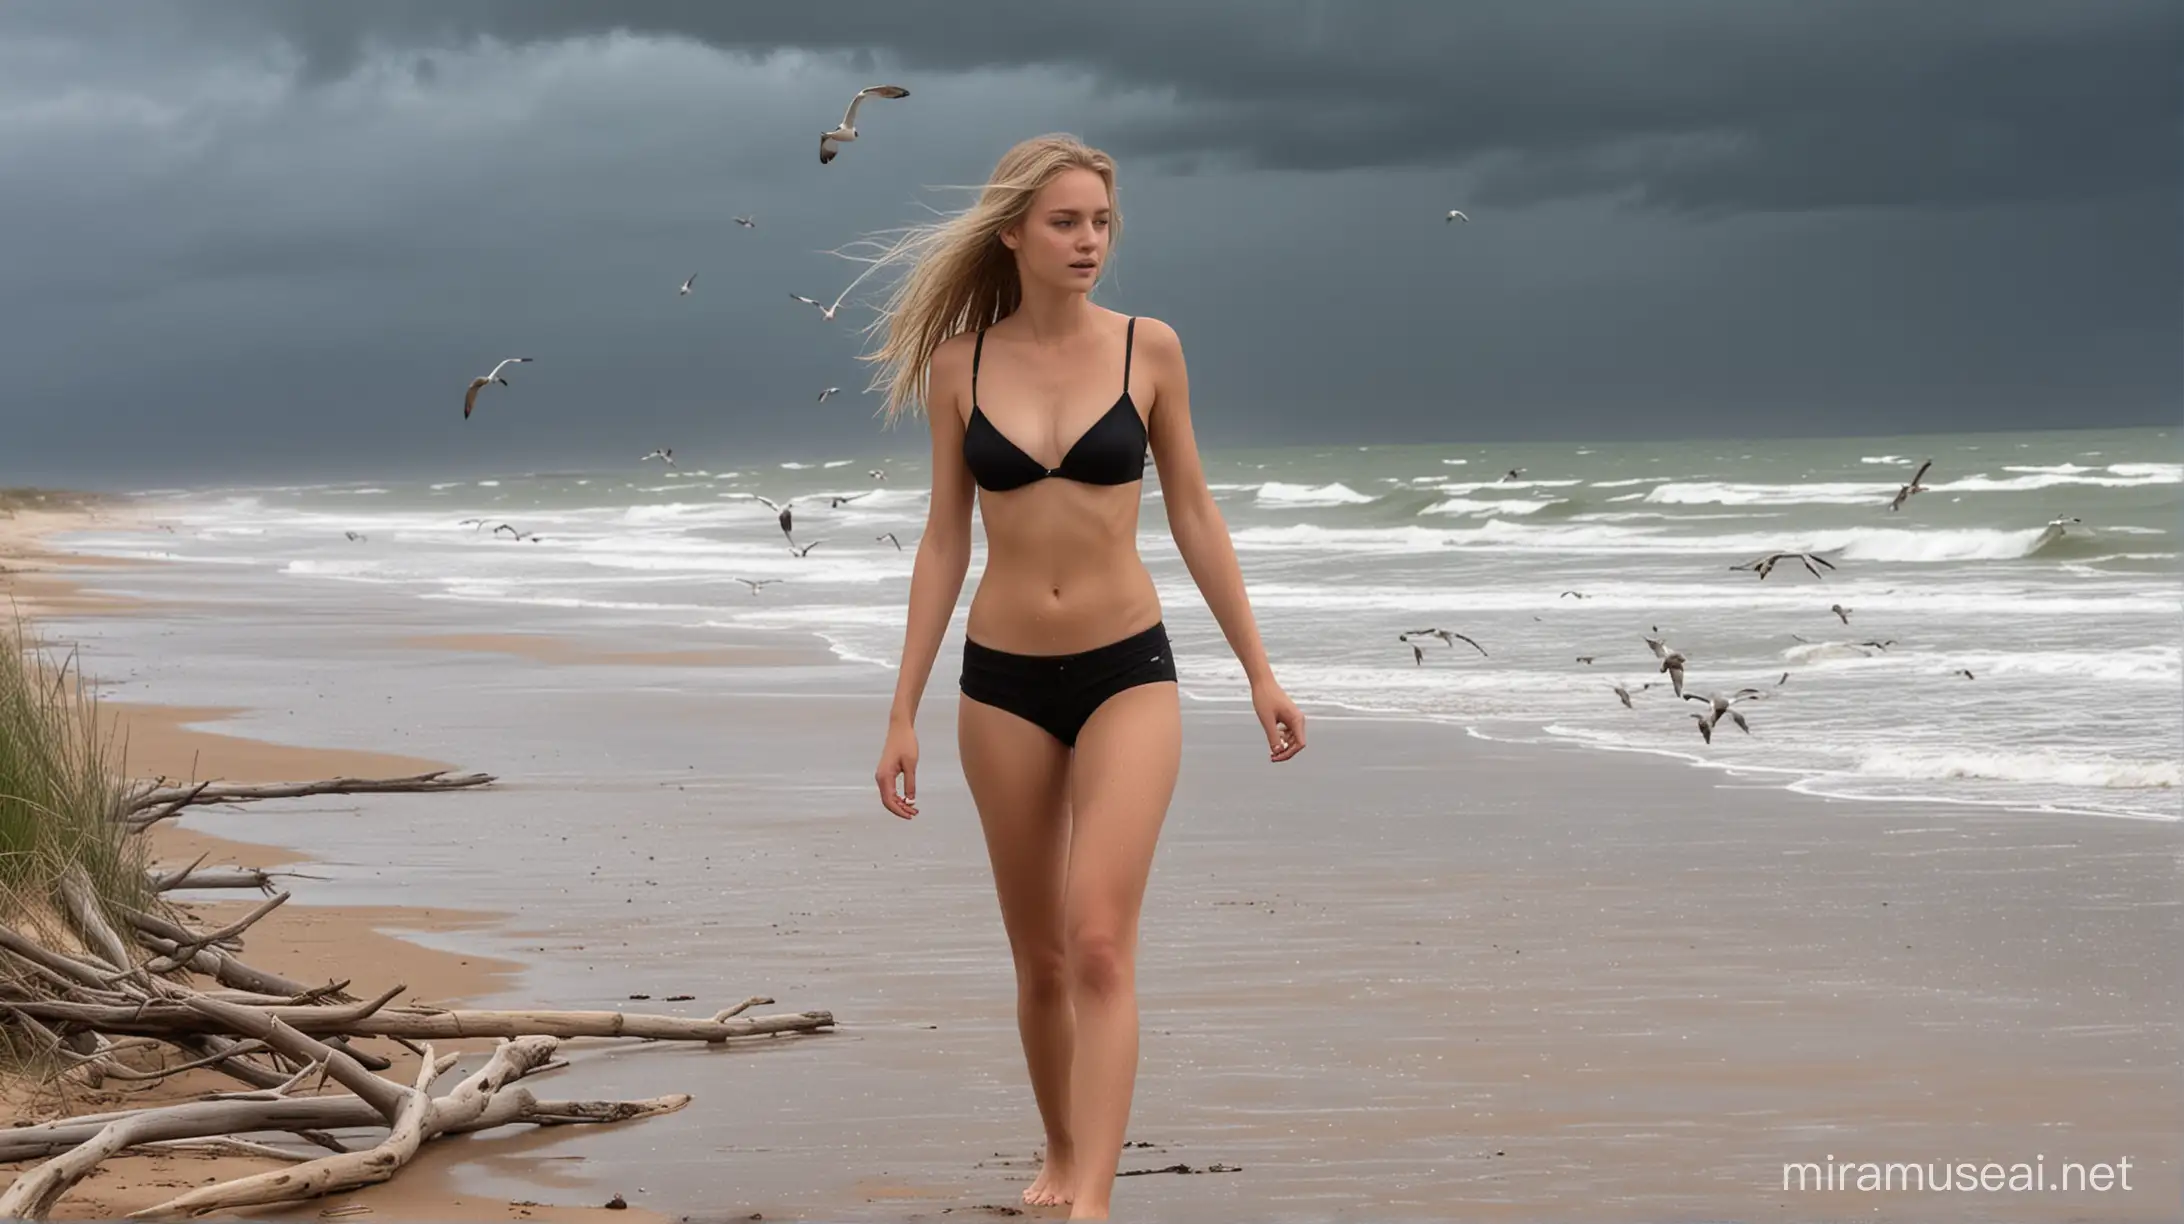 Blonde Woman Walking Topless in Rain along Dramatic Beach Landscape